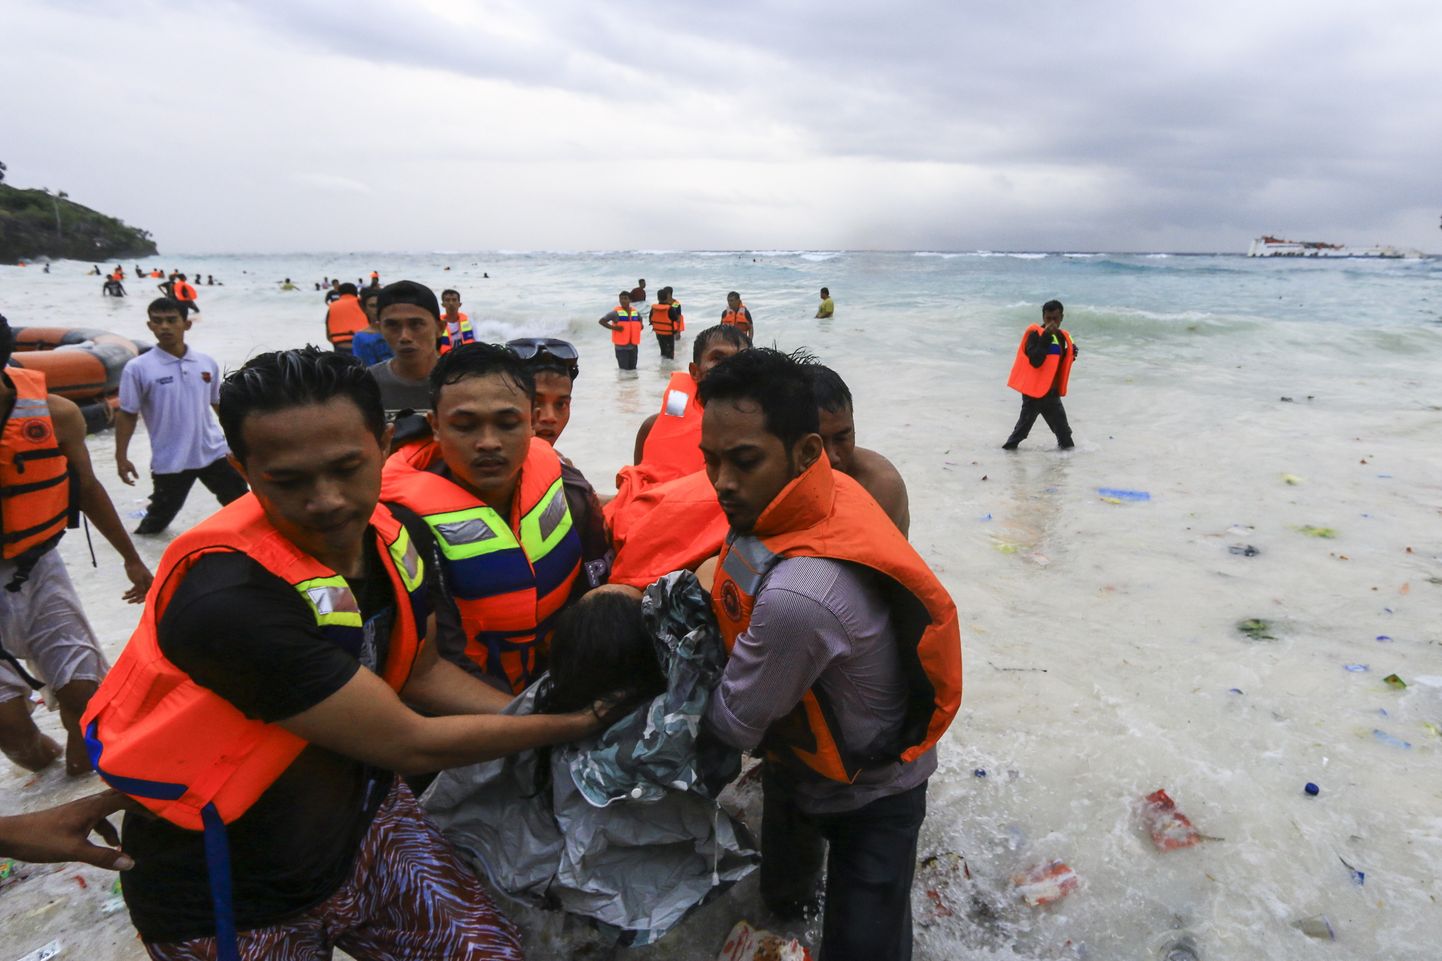 Indoneesia päästjad toovad veest välja praamiõnnetuse ohvreid.